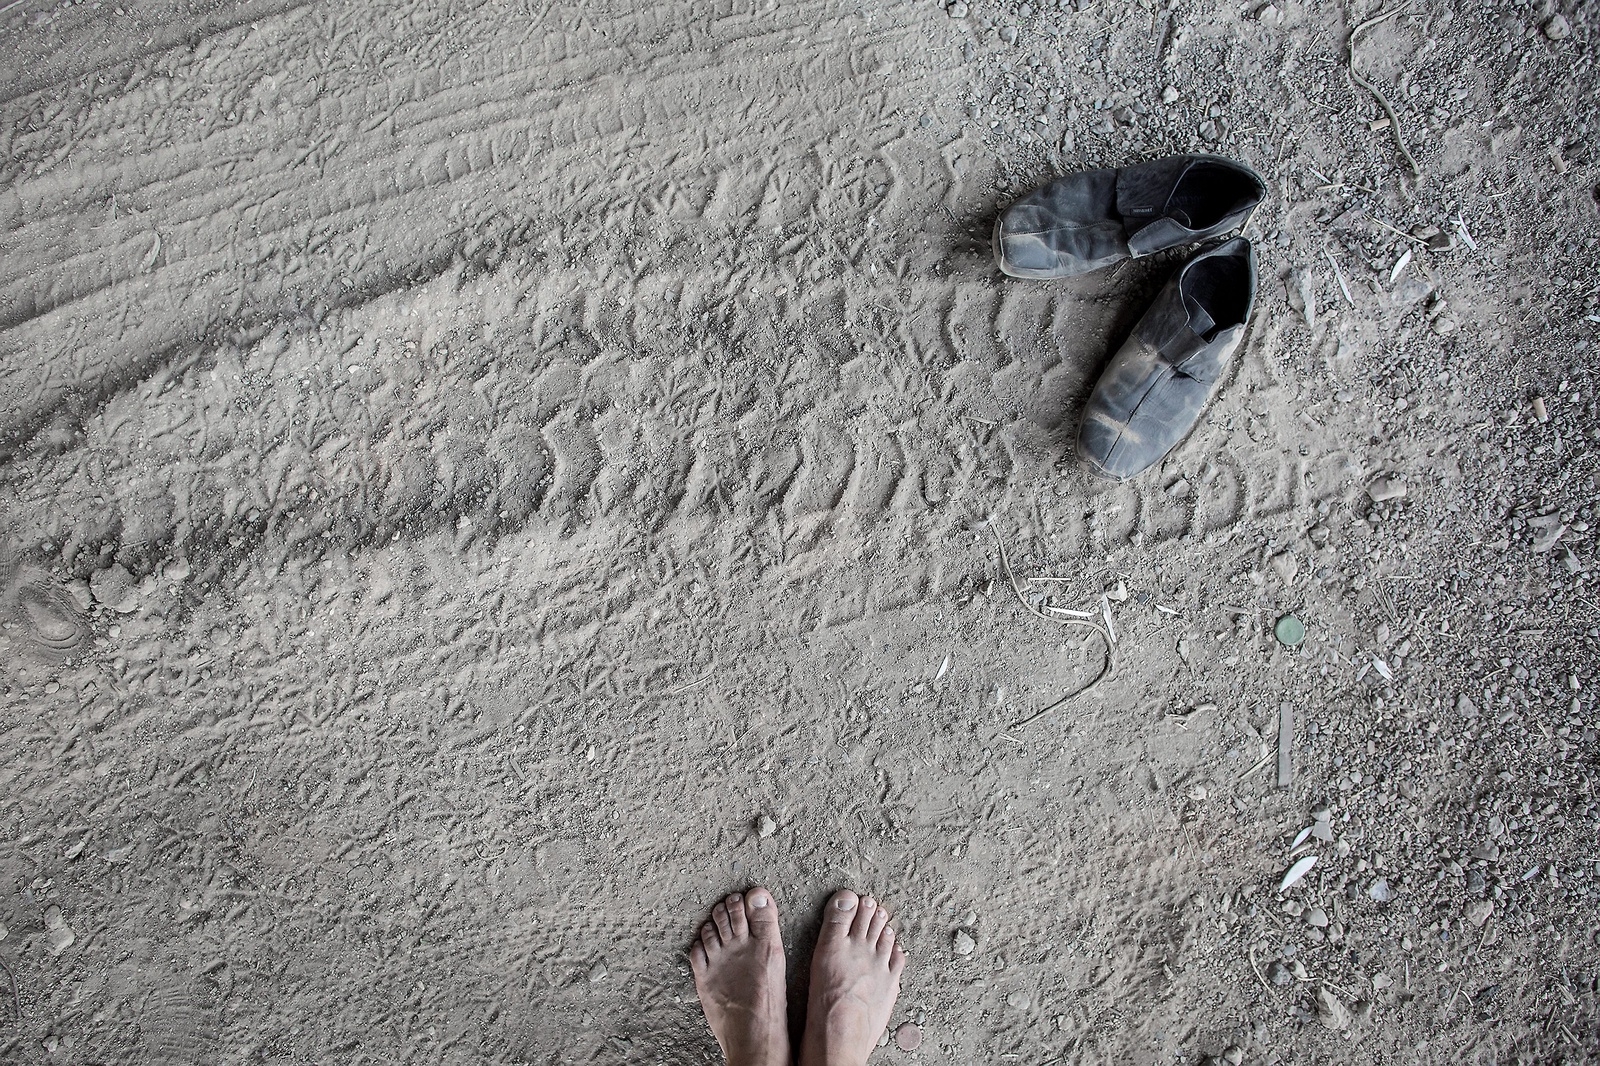 Ett par övergivna skor vid flyktinglägret i Grekland. 
foto: jörgen johansson